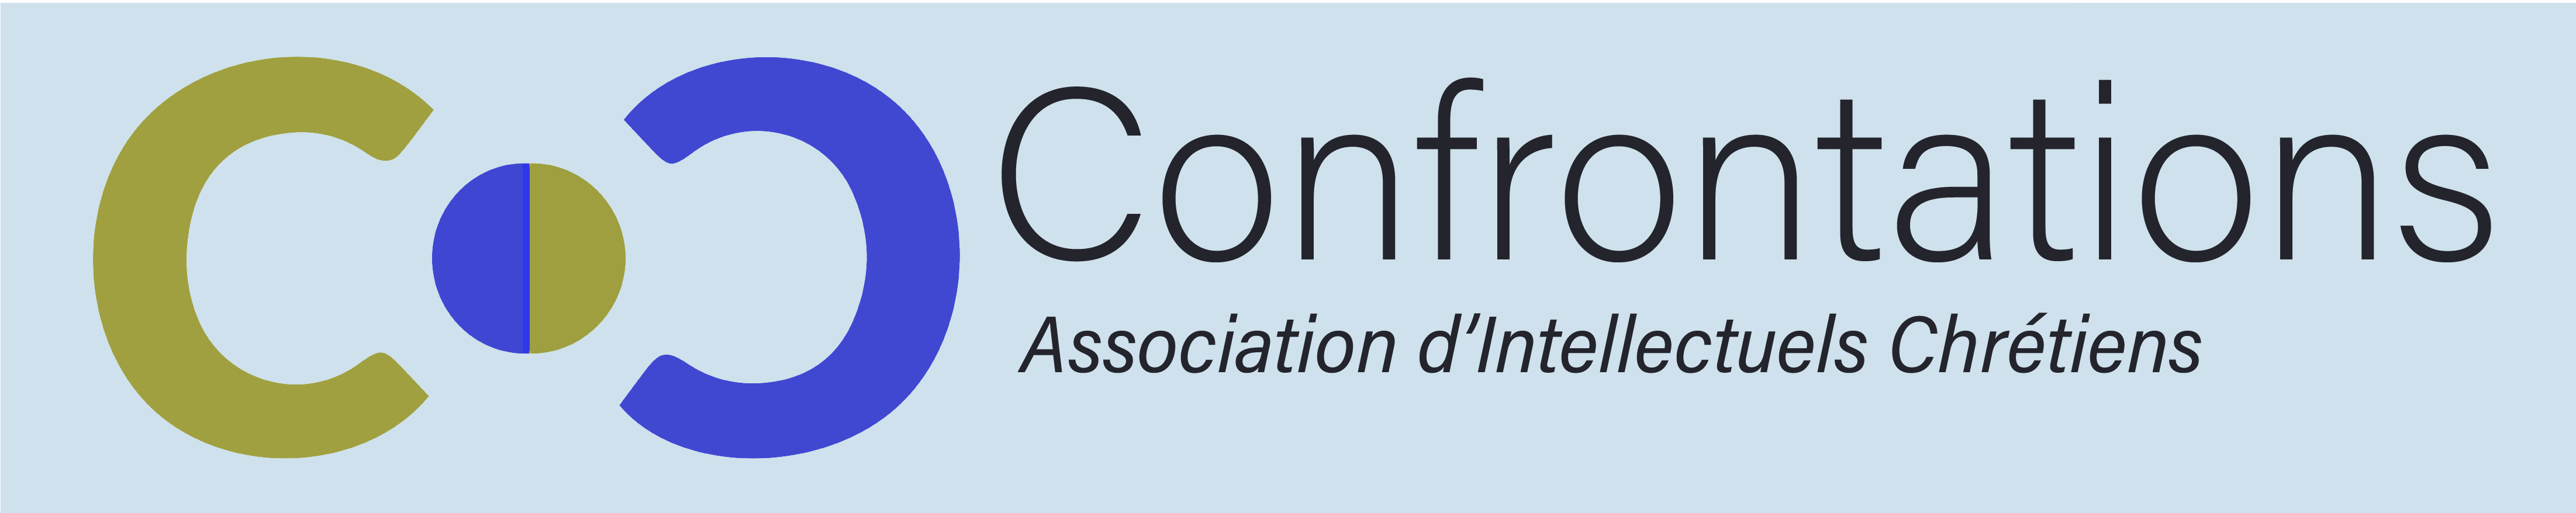 Logo de Confrontations - Association d’Intellectuels Chrétiens